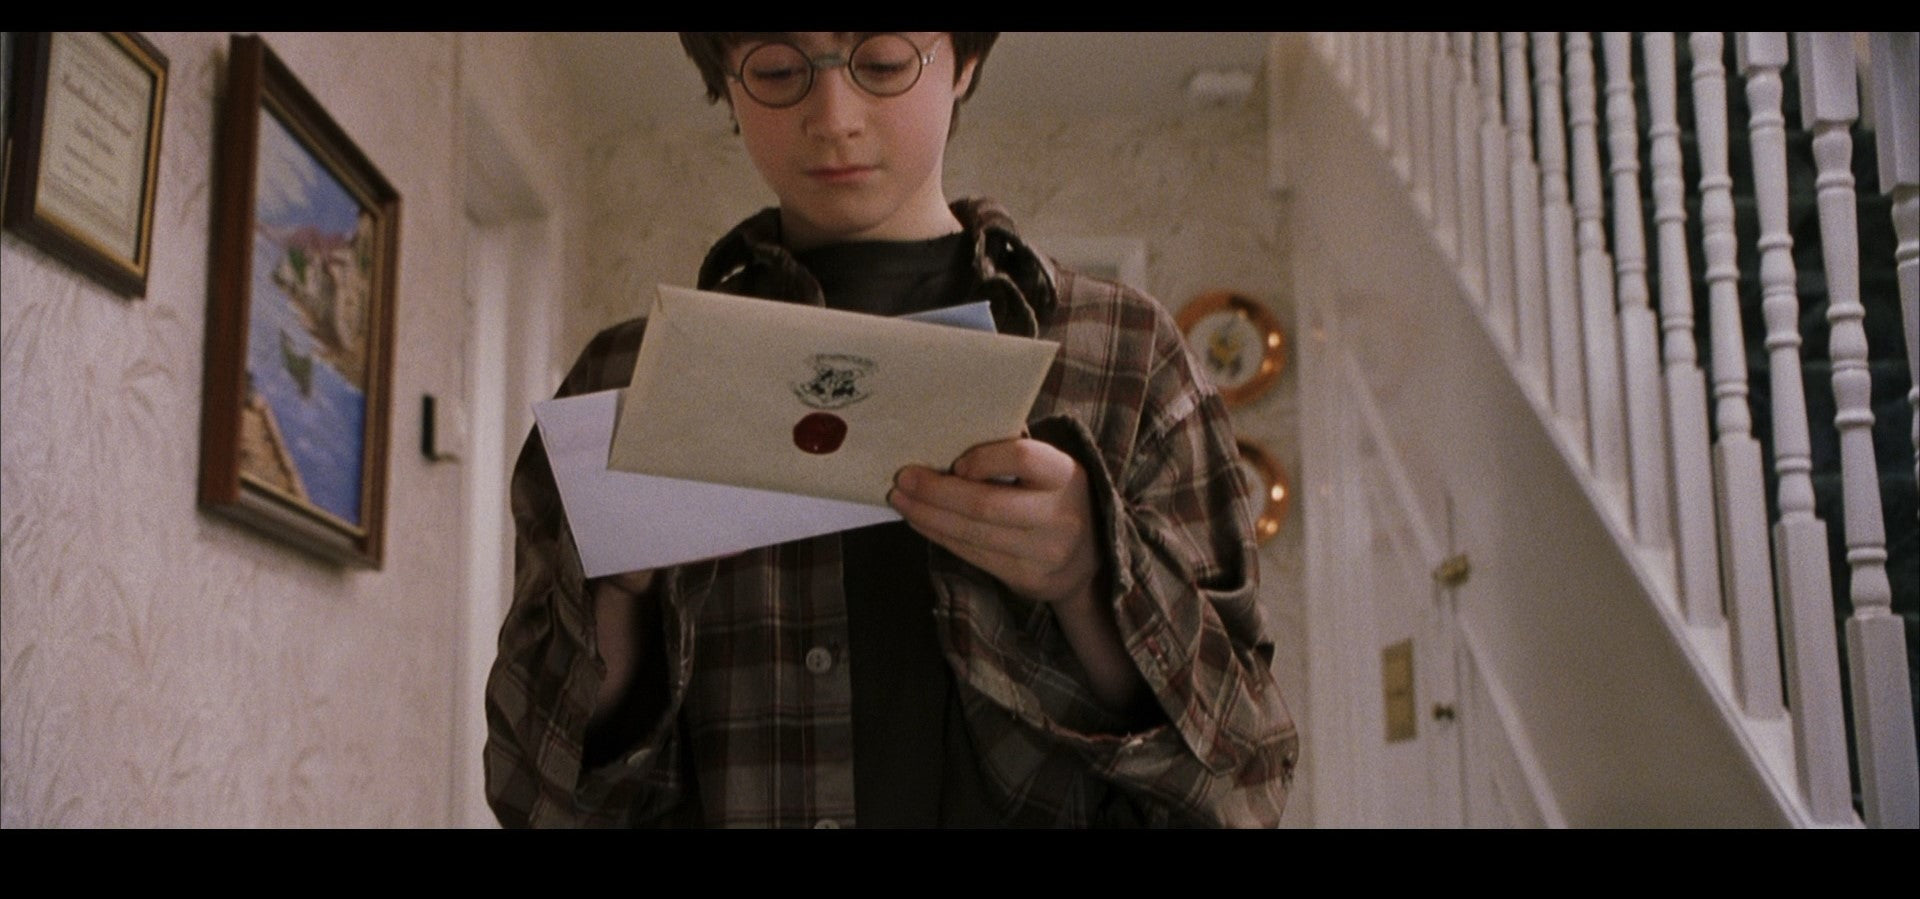 Hogwarts Acceptance Letter  2001, original production made letter